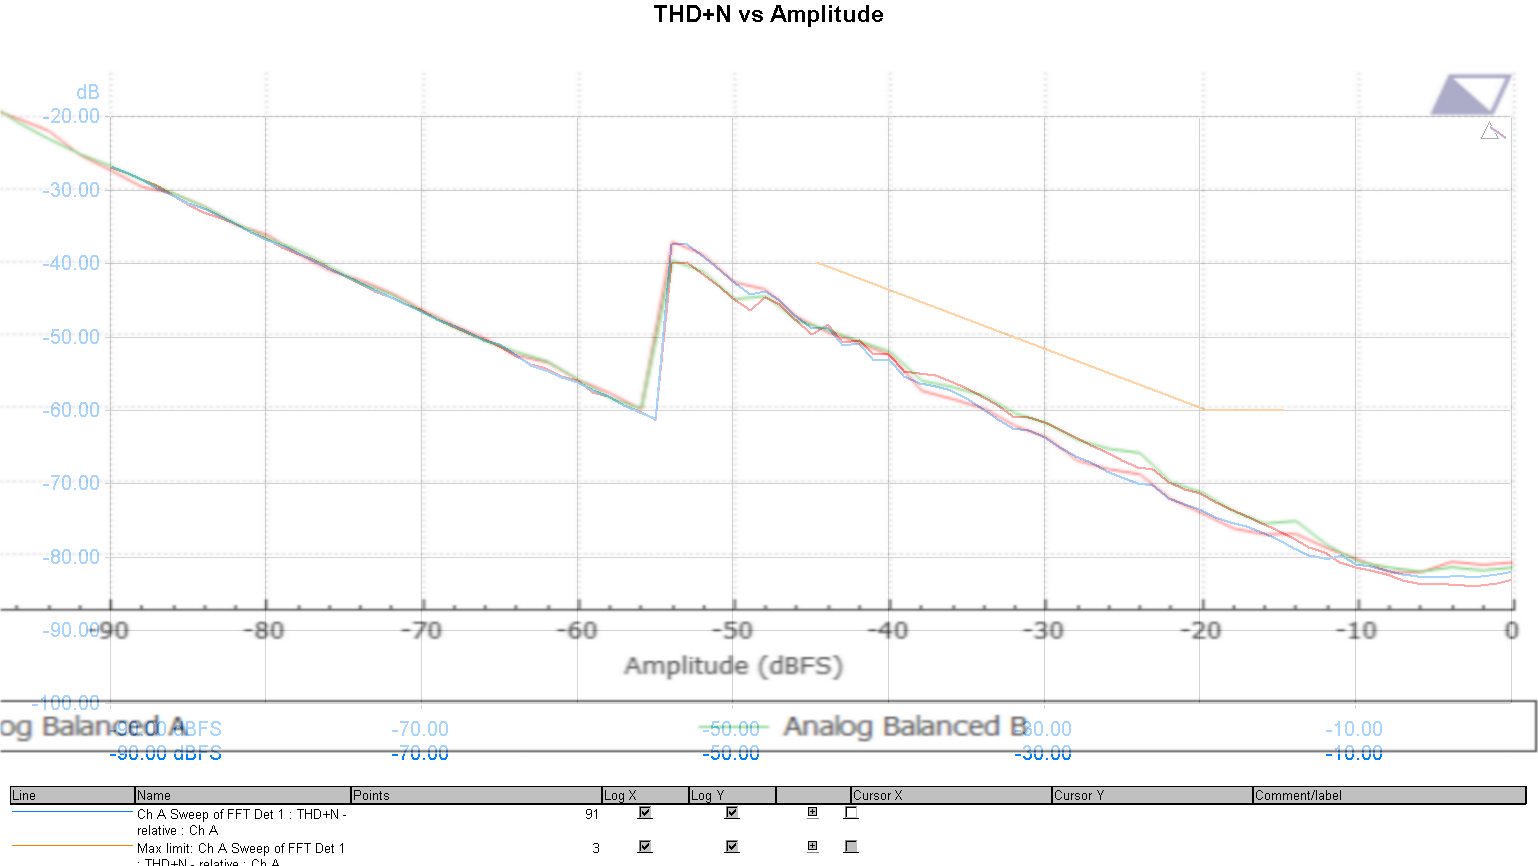 dScope_Avermetrics_THD+N_vs_amplitude_overlay.png